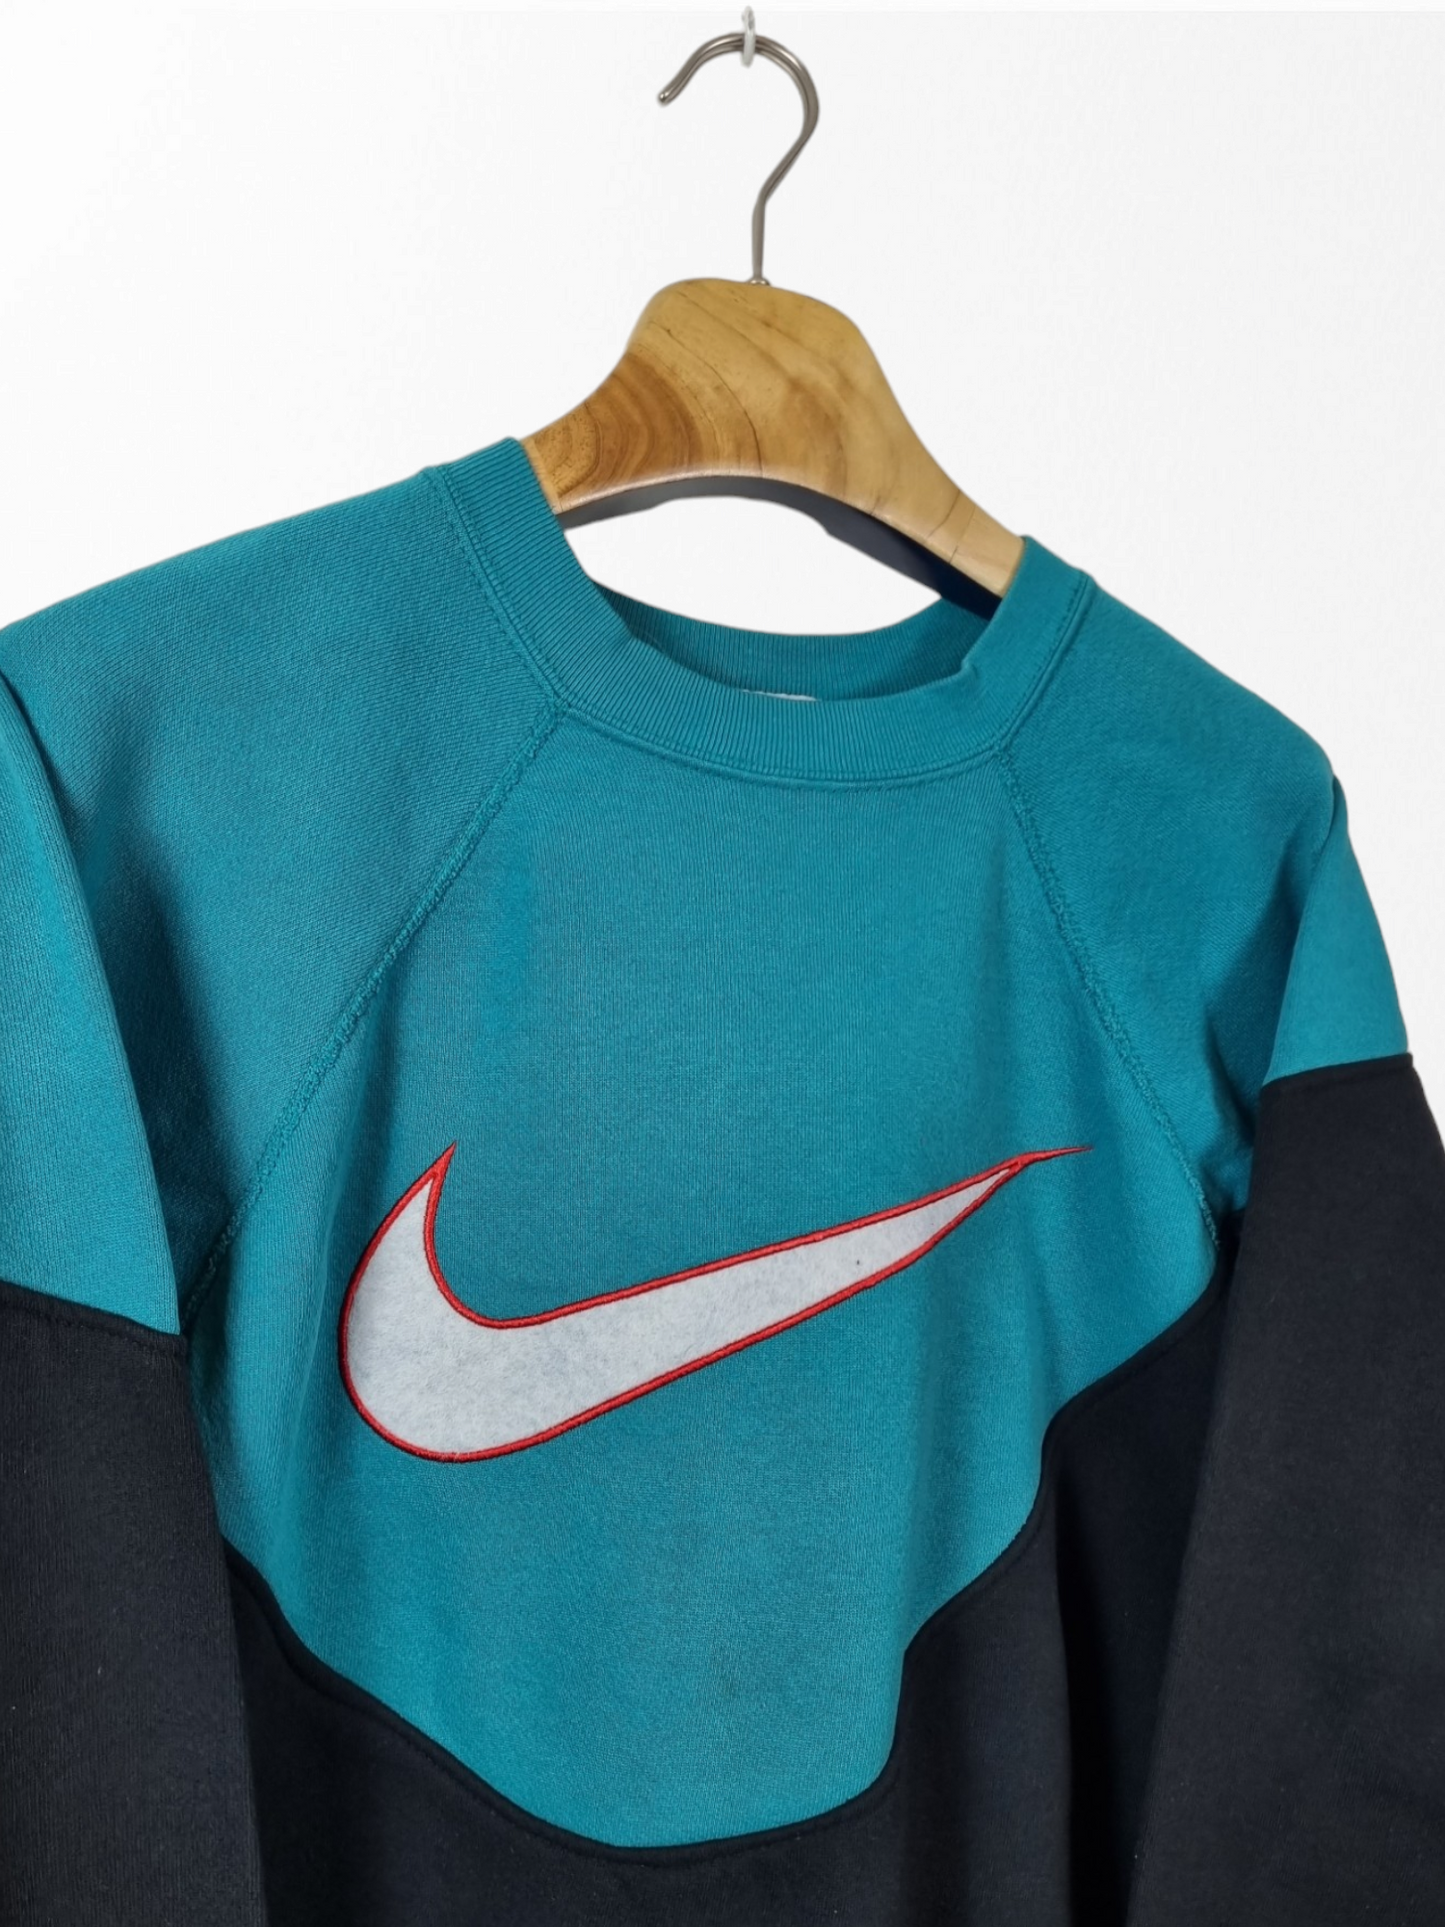 Nike Big Swoosh sweater maat S/M